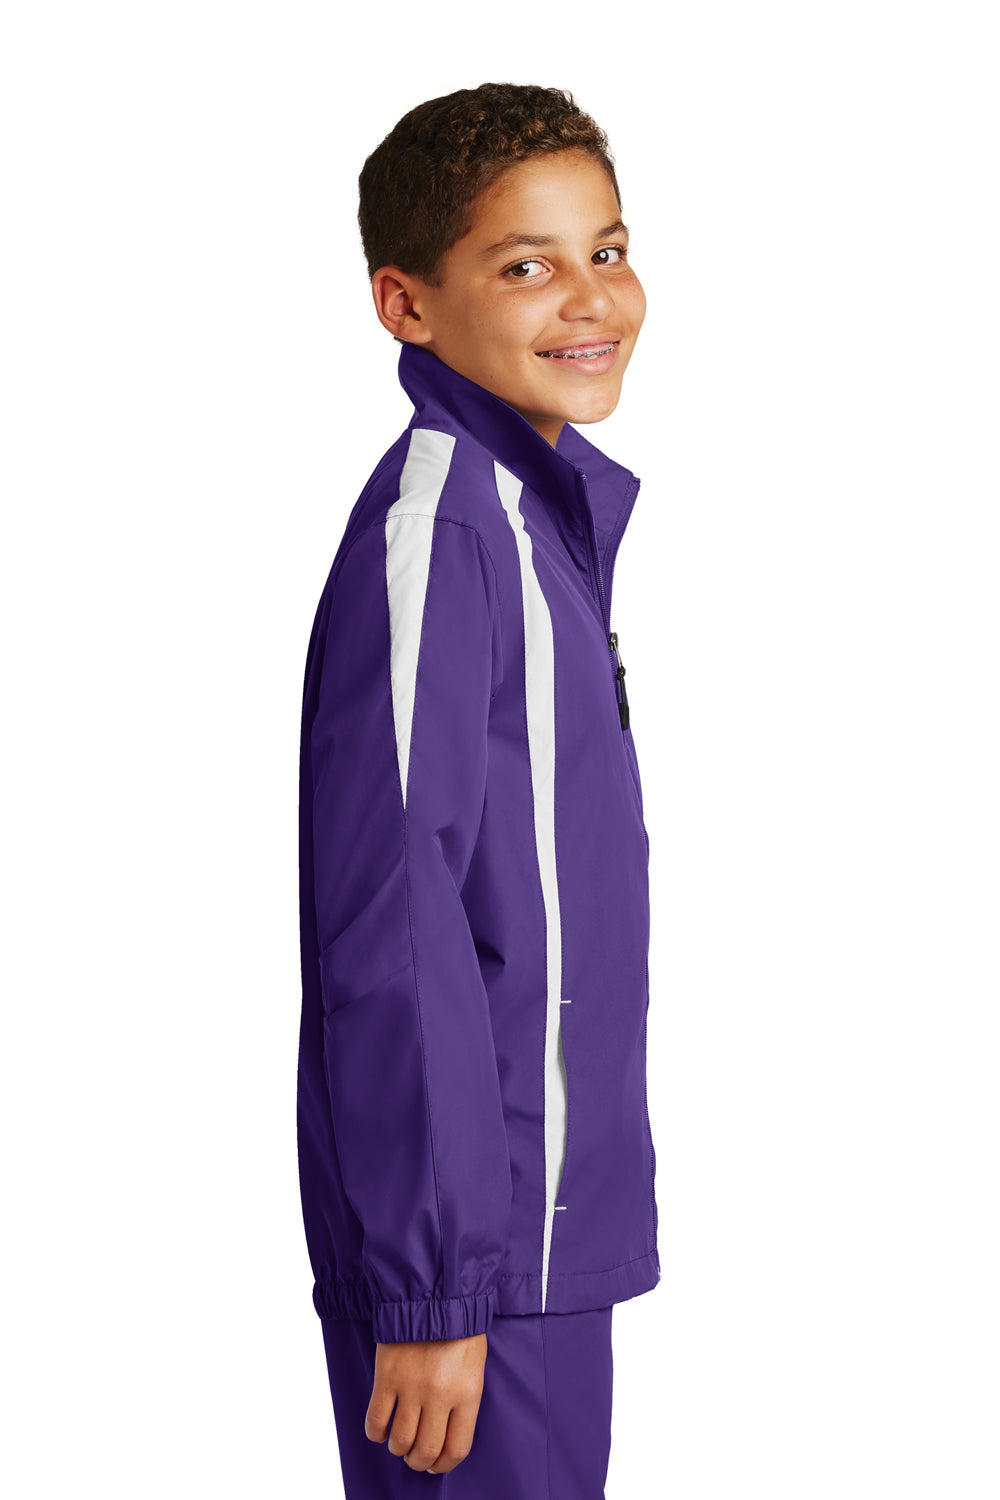 Sport-Tek YST60 Youth Water Resistant Full Zip Jacket Purple/White Side